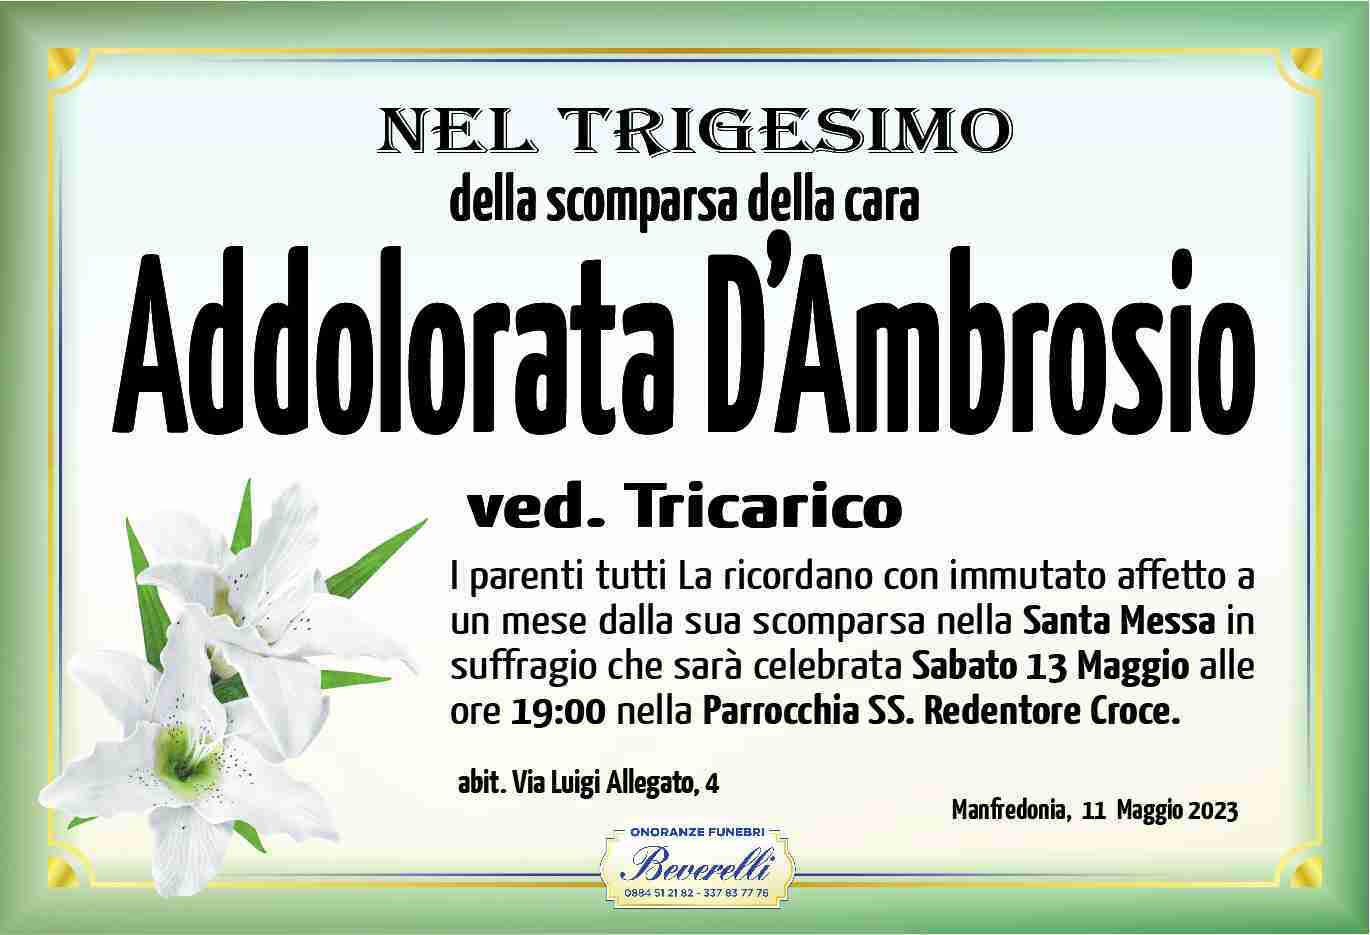 Addolorata D'Ambrosio